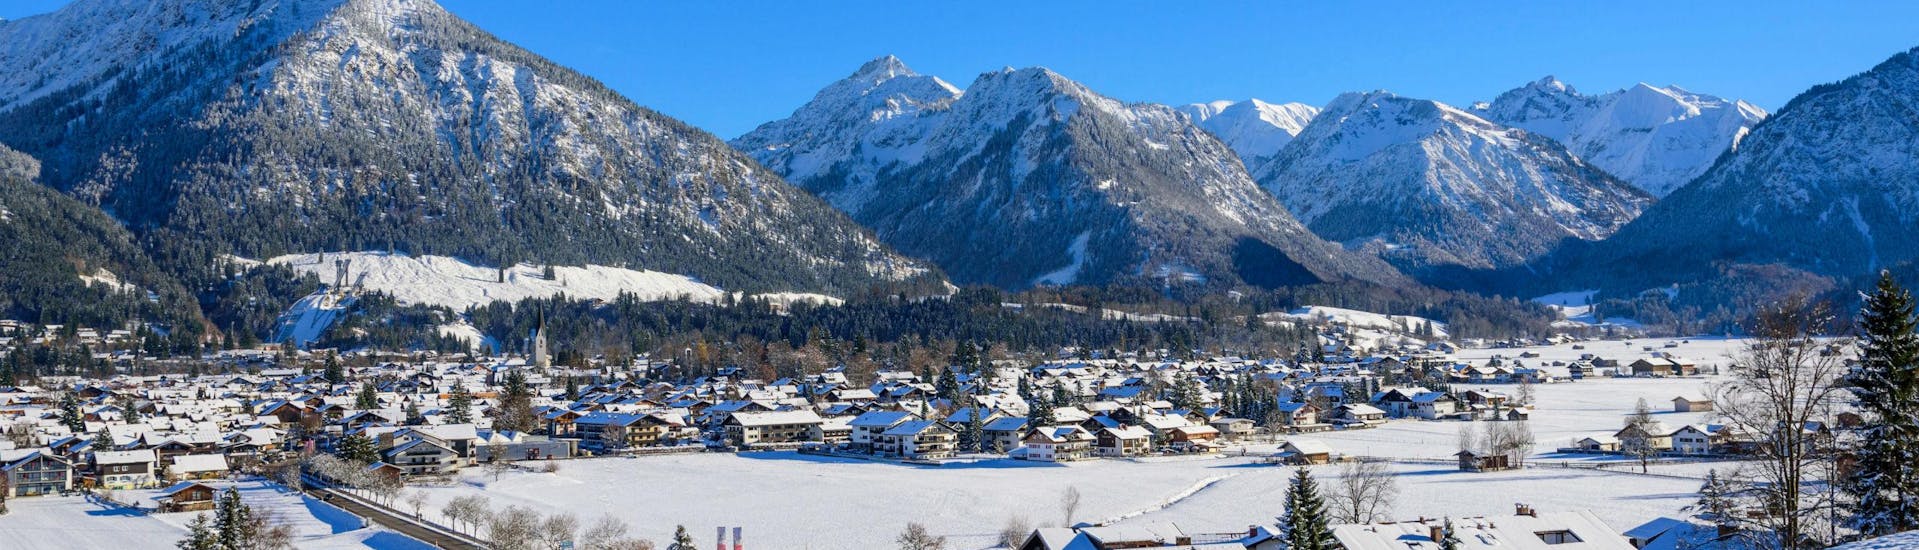 Blick auf die malerische Ortschaft Oberstorf, ein von den bayrischen Alpen umzingeltes Skigebiet in dem die örtlichen Skischulen eine Vielzahl an Skikursen anbieten. 